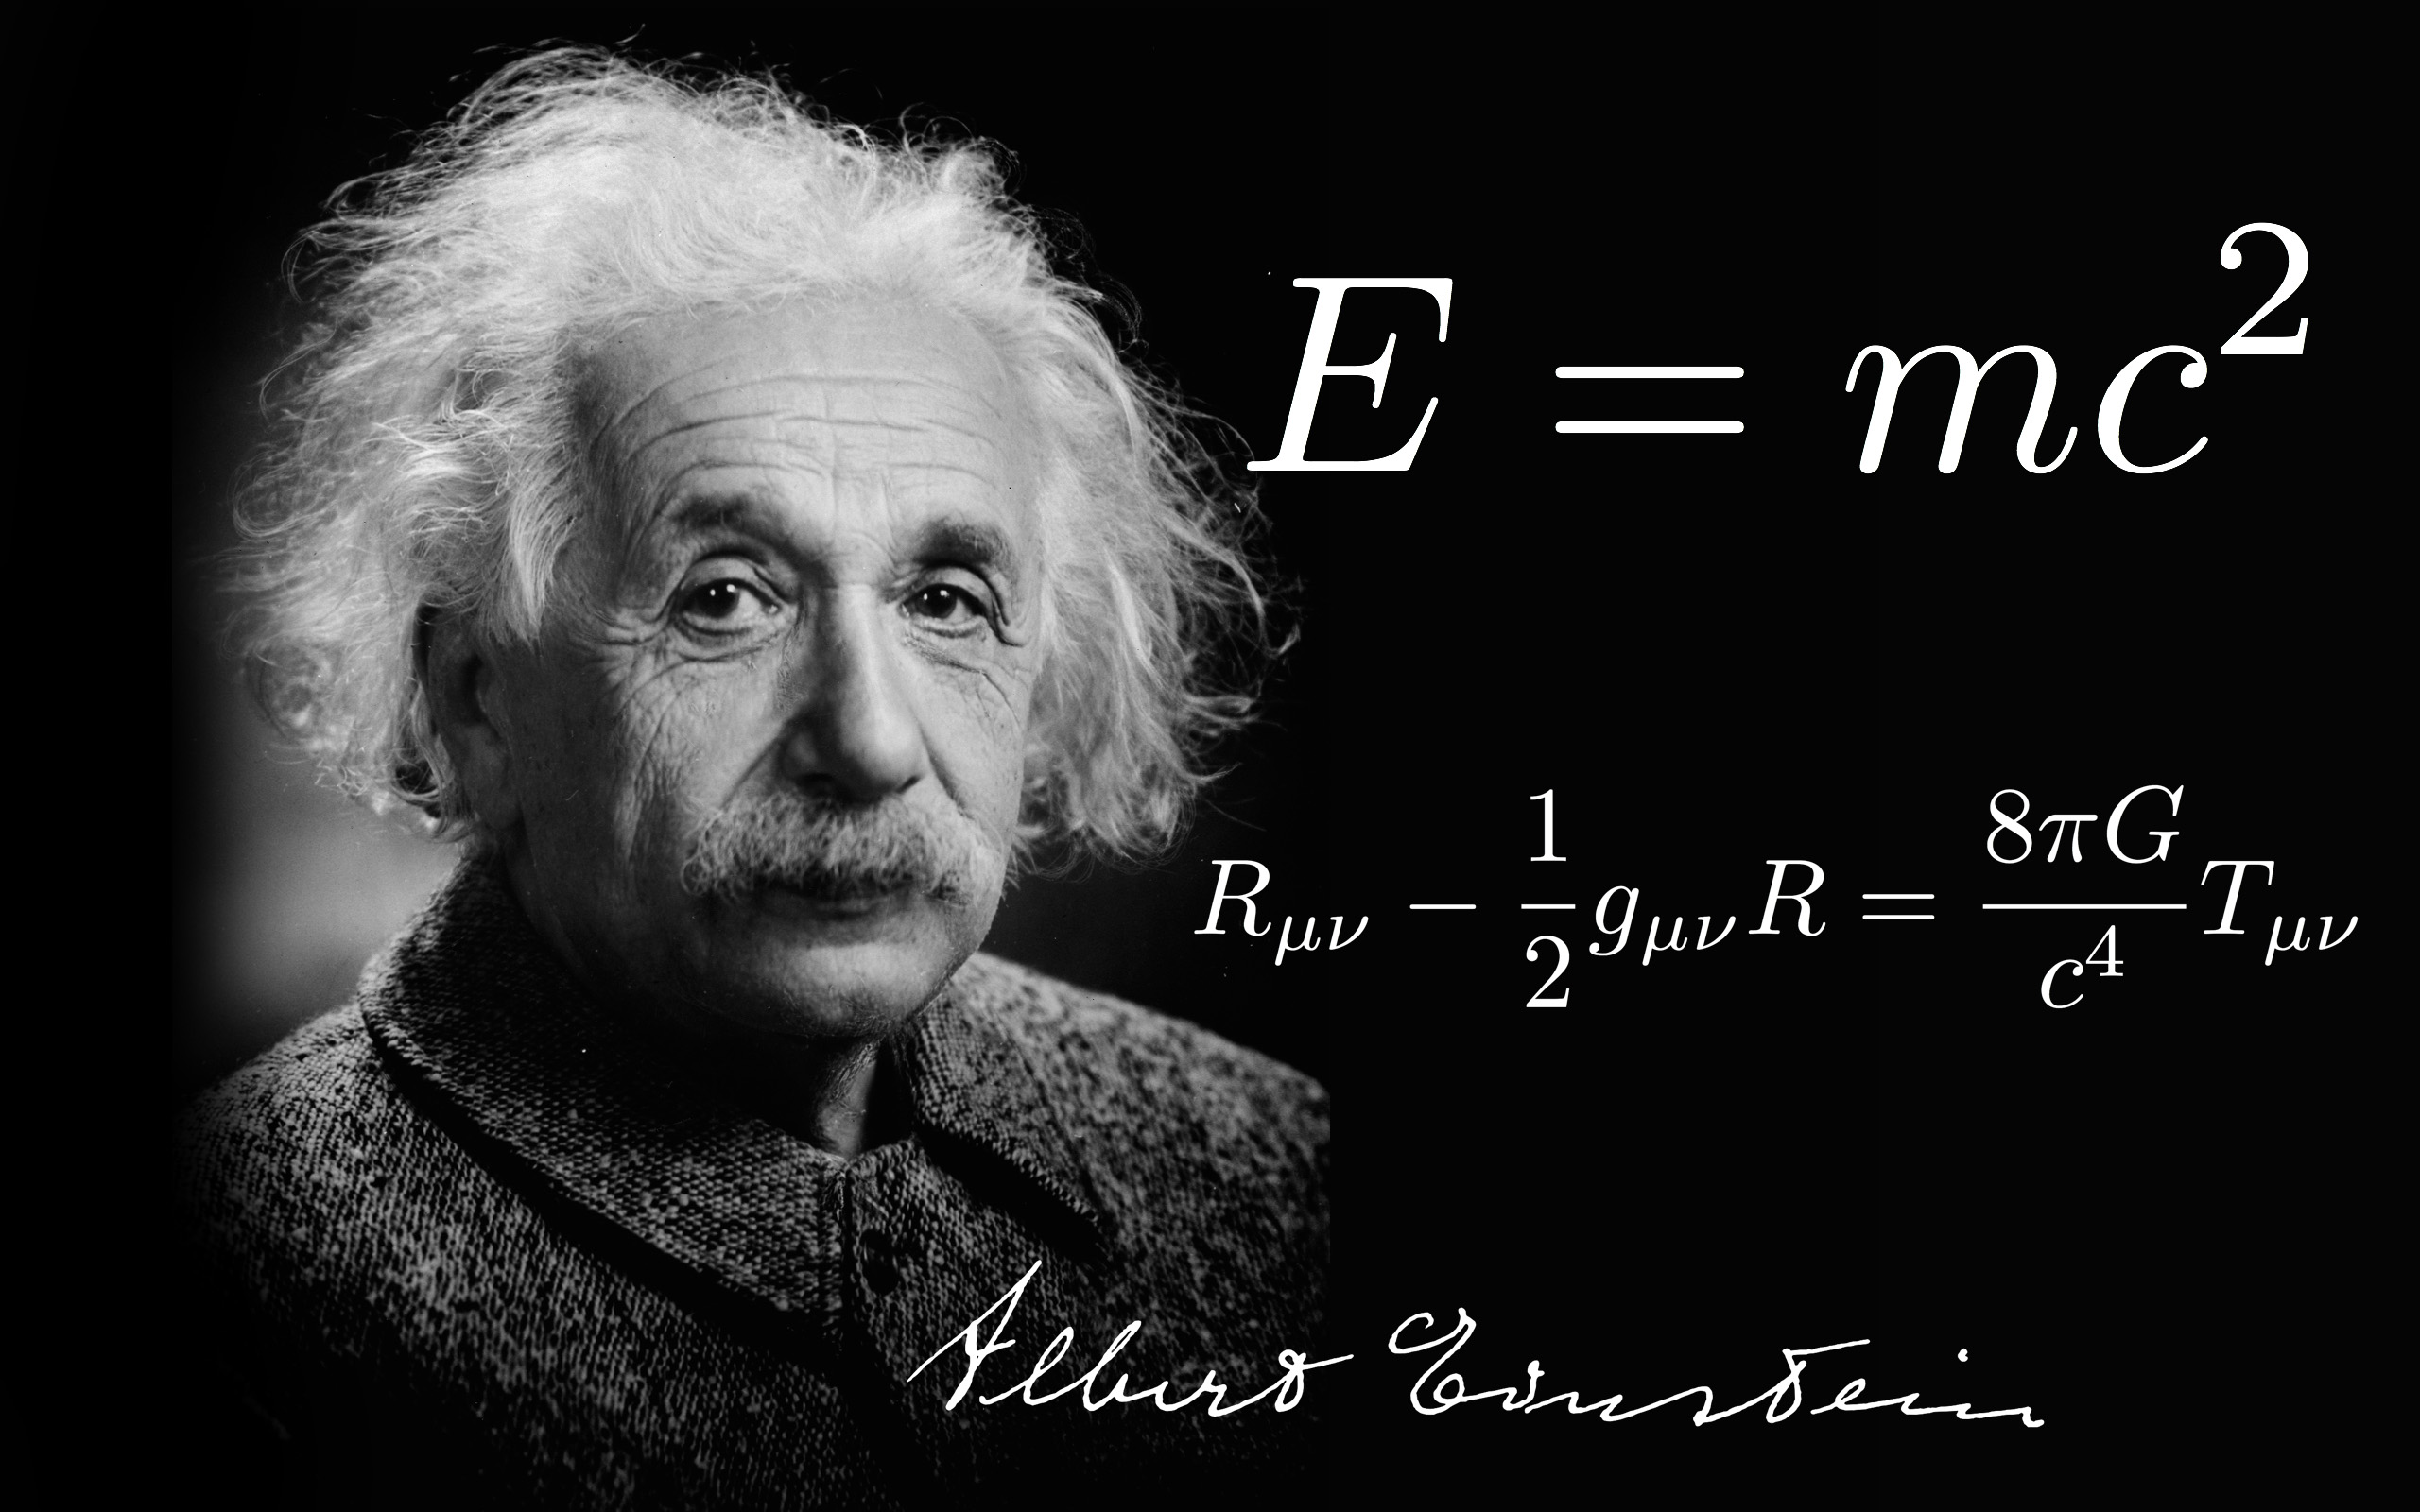 牛顿爱因斯坦照片图片